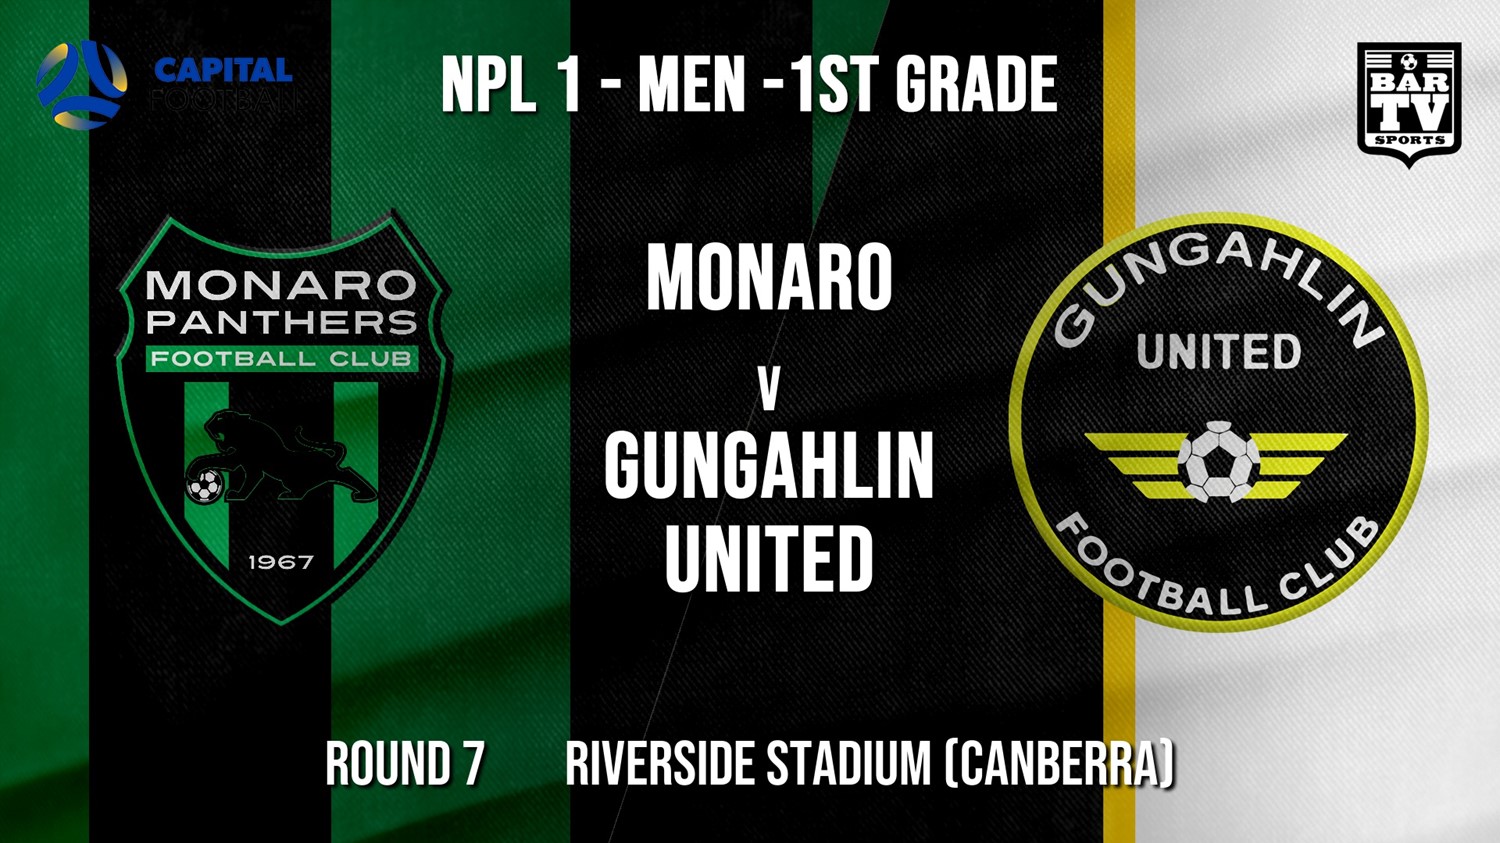 NPL - CAPITAL Round 7 - Monaro Panthers FC v Gungahlin United FC Minigame Slate Image